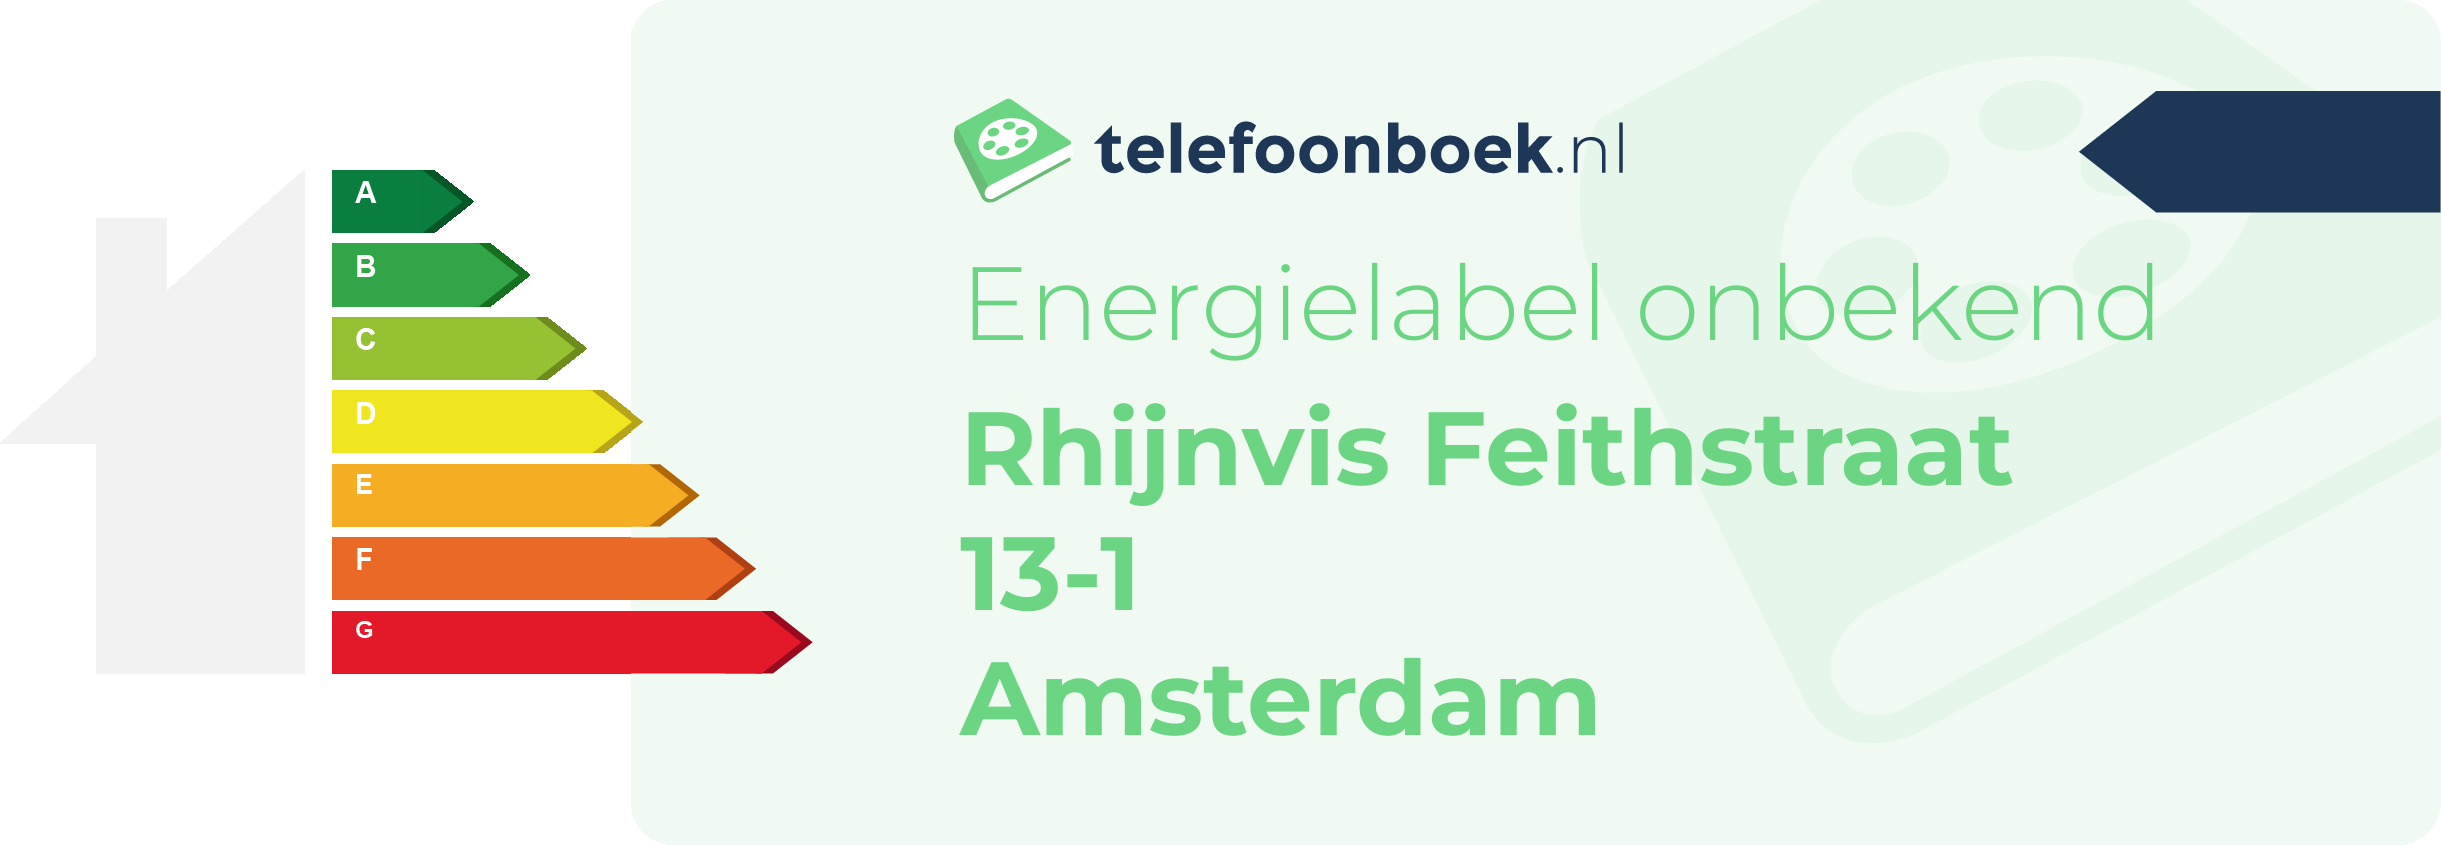 Energielabel Rhijnvis Feithstraat 13-1 Amsterdam